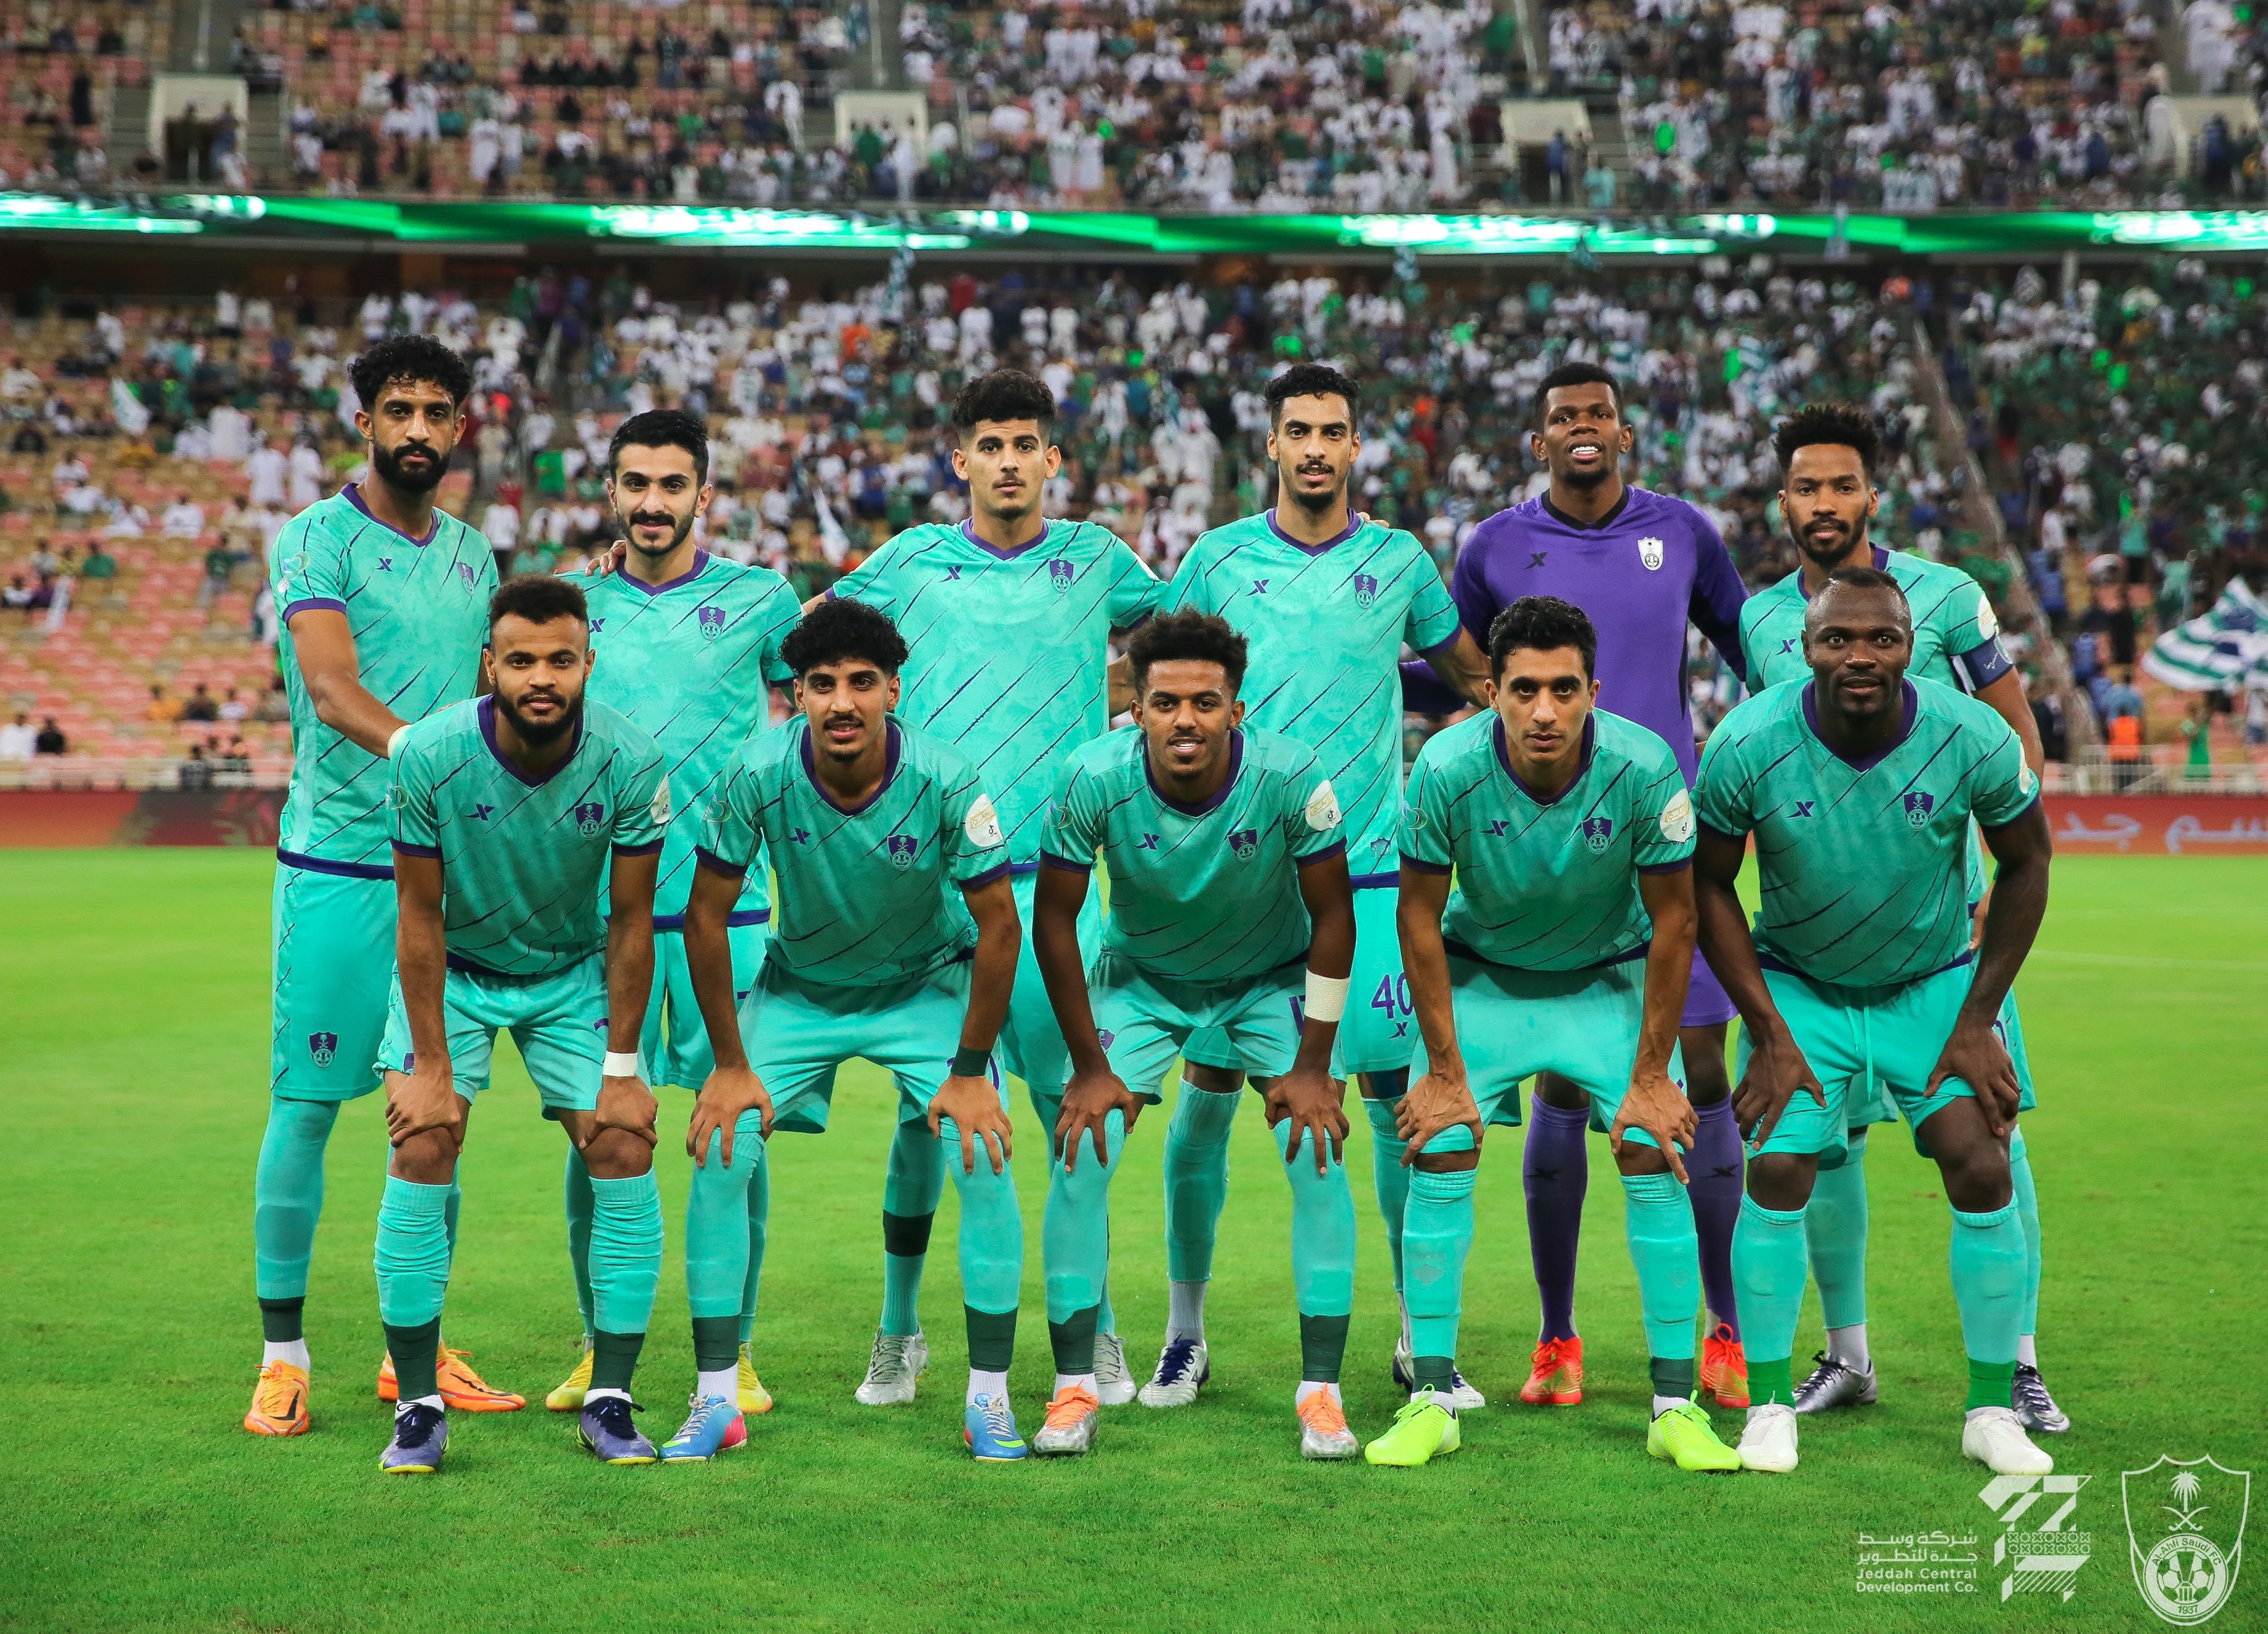 Al-Ahli Saudi Club on Twitter: 